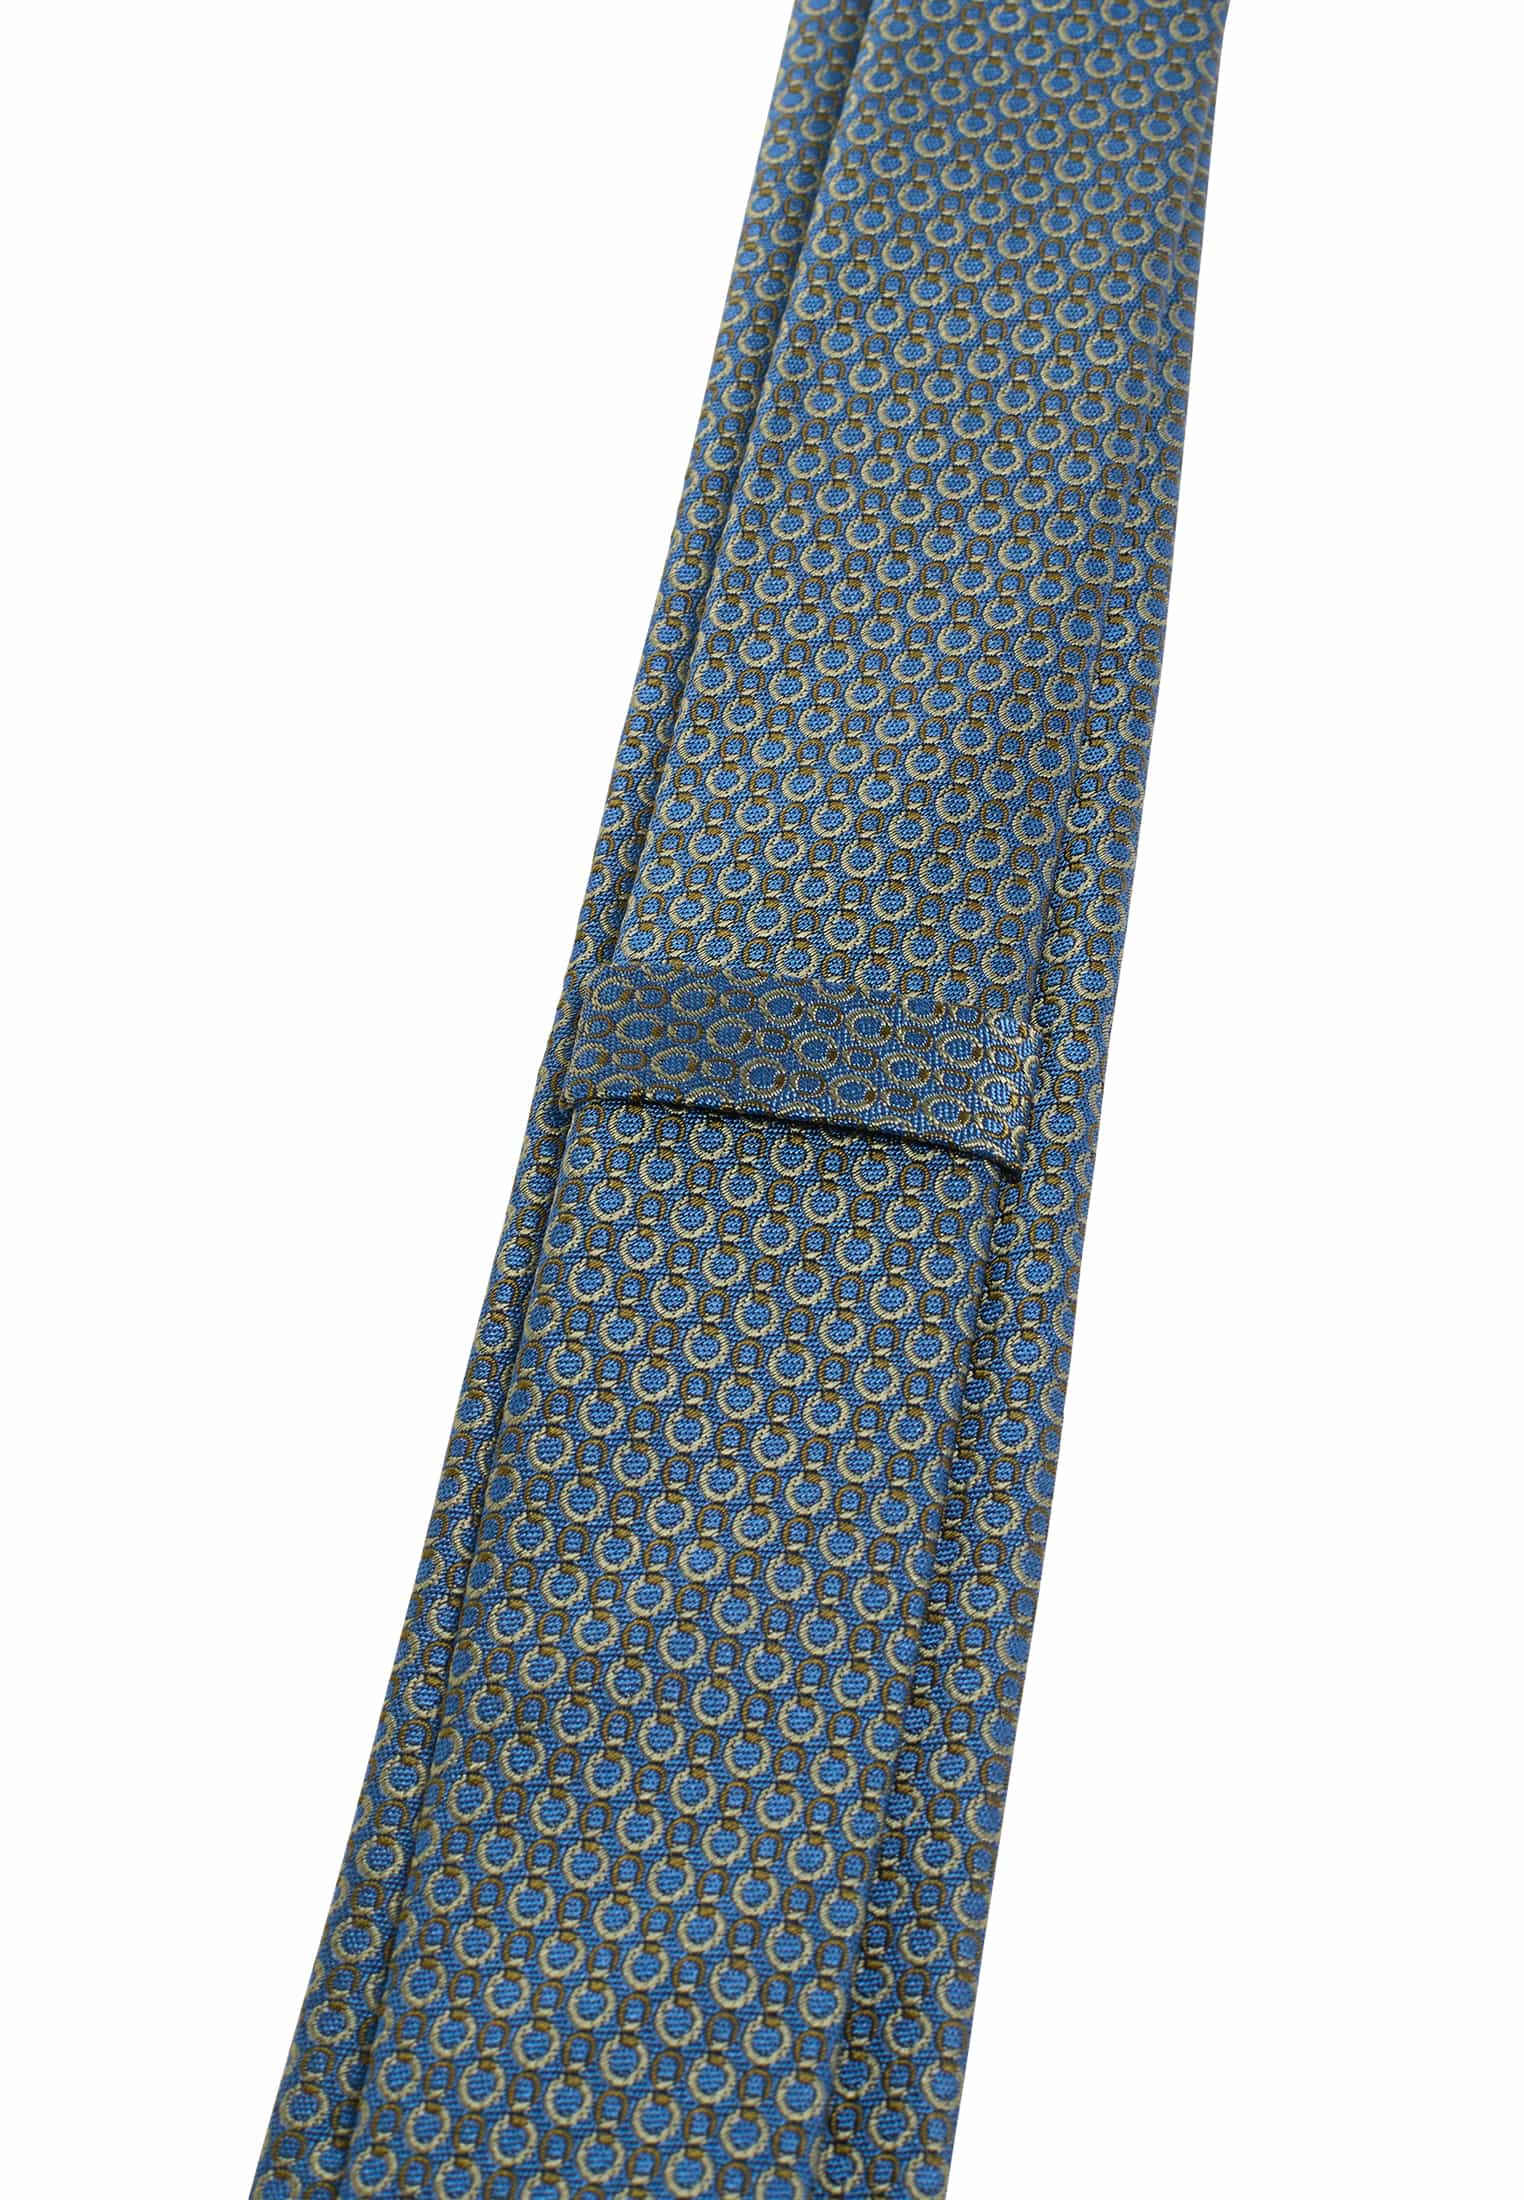 Krawatte in blau/grün strukturiert | blau/grün | 142 | 1AC01948-81-48-142